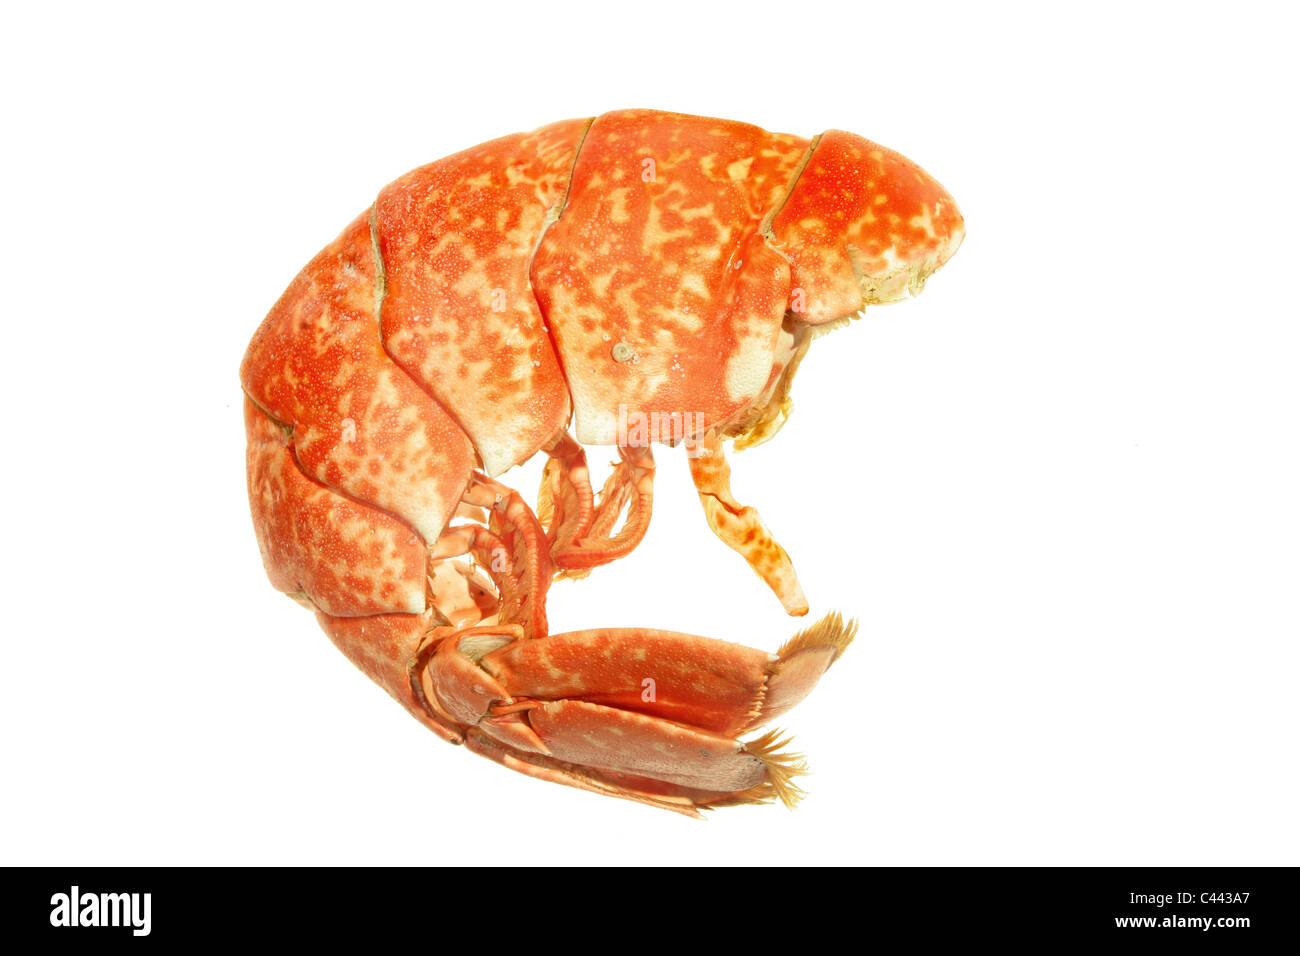 Libre d'une queue de homard cuit isolated on white Banque D'Images